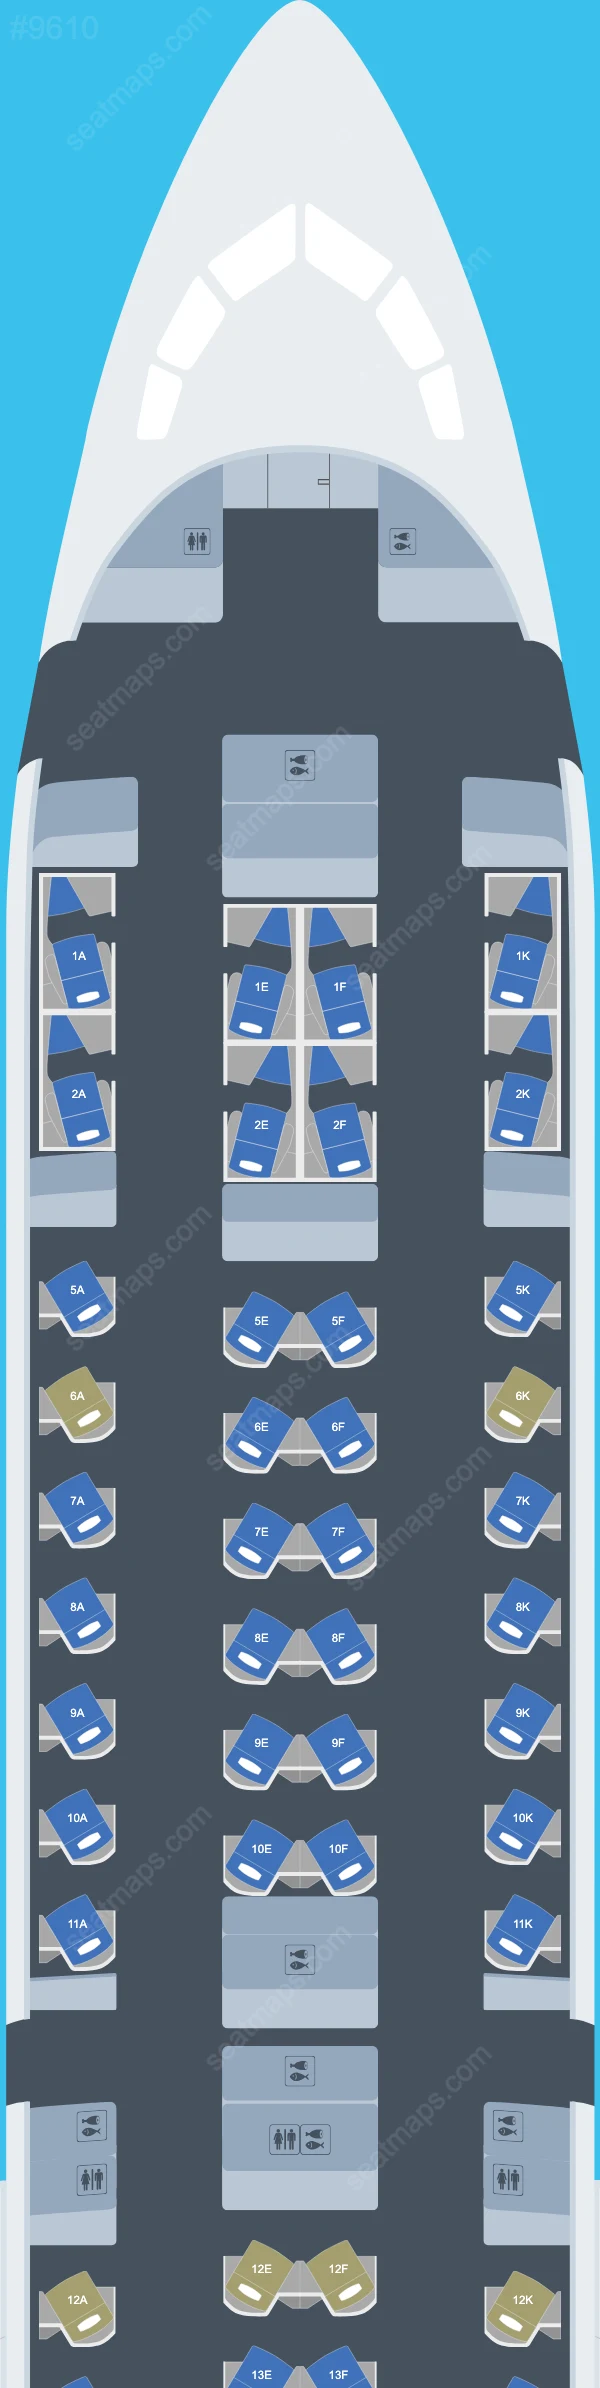 British Airways Boeing 787 Seat Maps 787-10